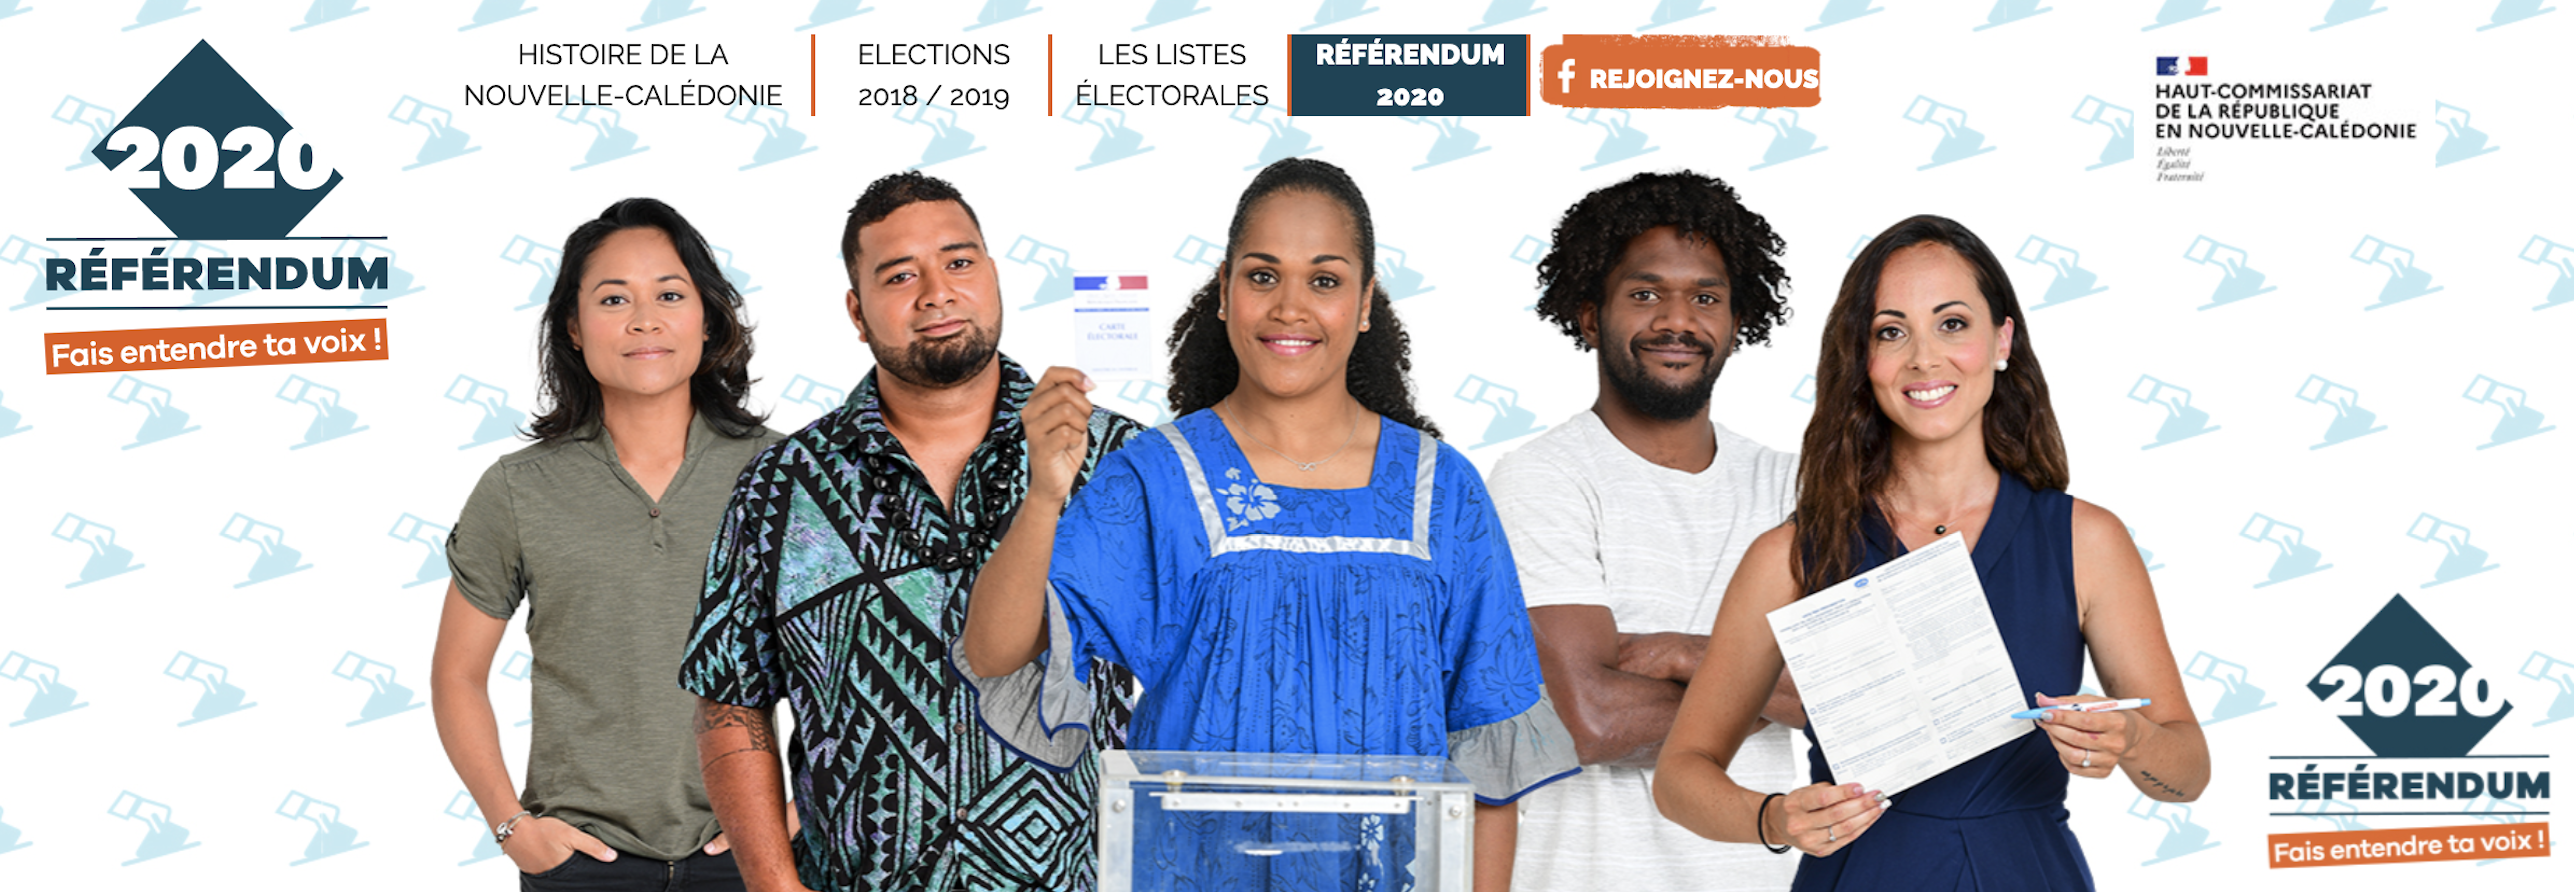 Le référendum est organisé par le Haut-Commissariat de la République en Nouvelle-Calédonie, l'équivalent d'une préfecture pour cette collectivité française dans le Pacifique sud